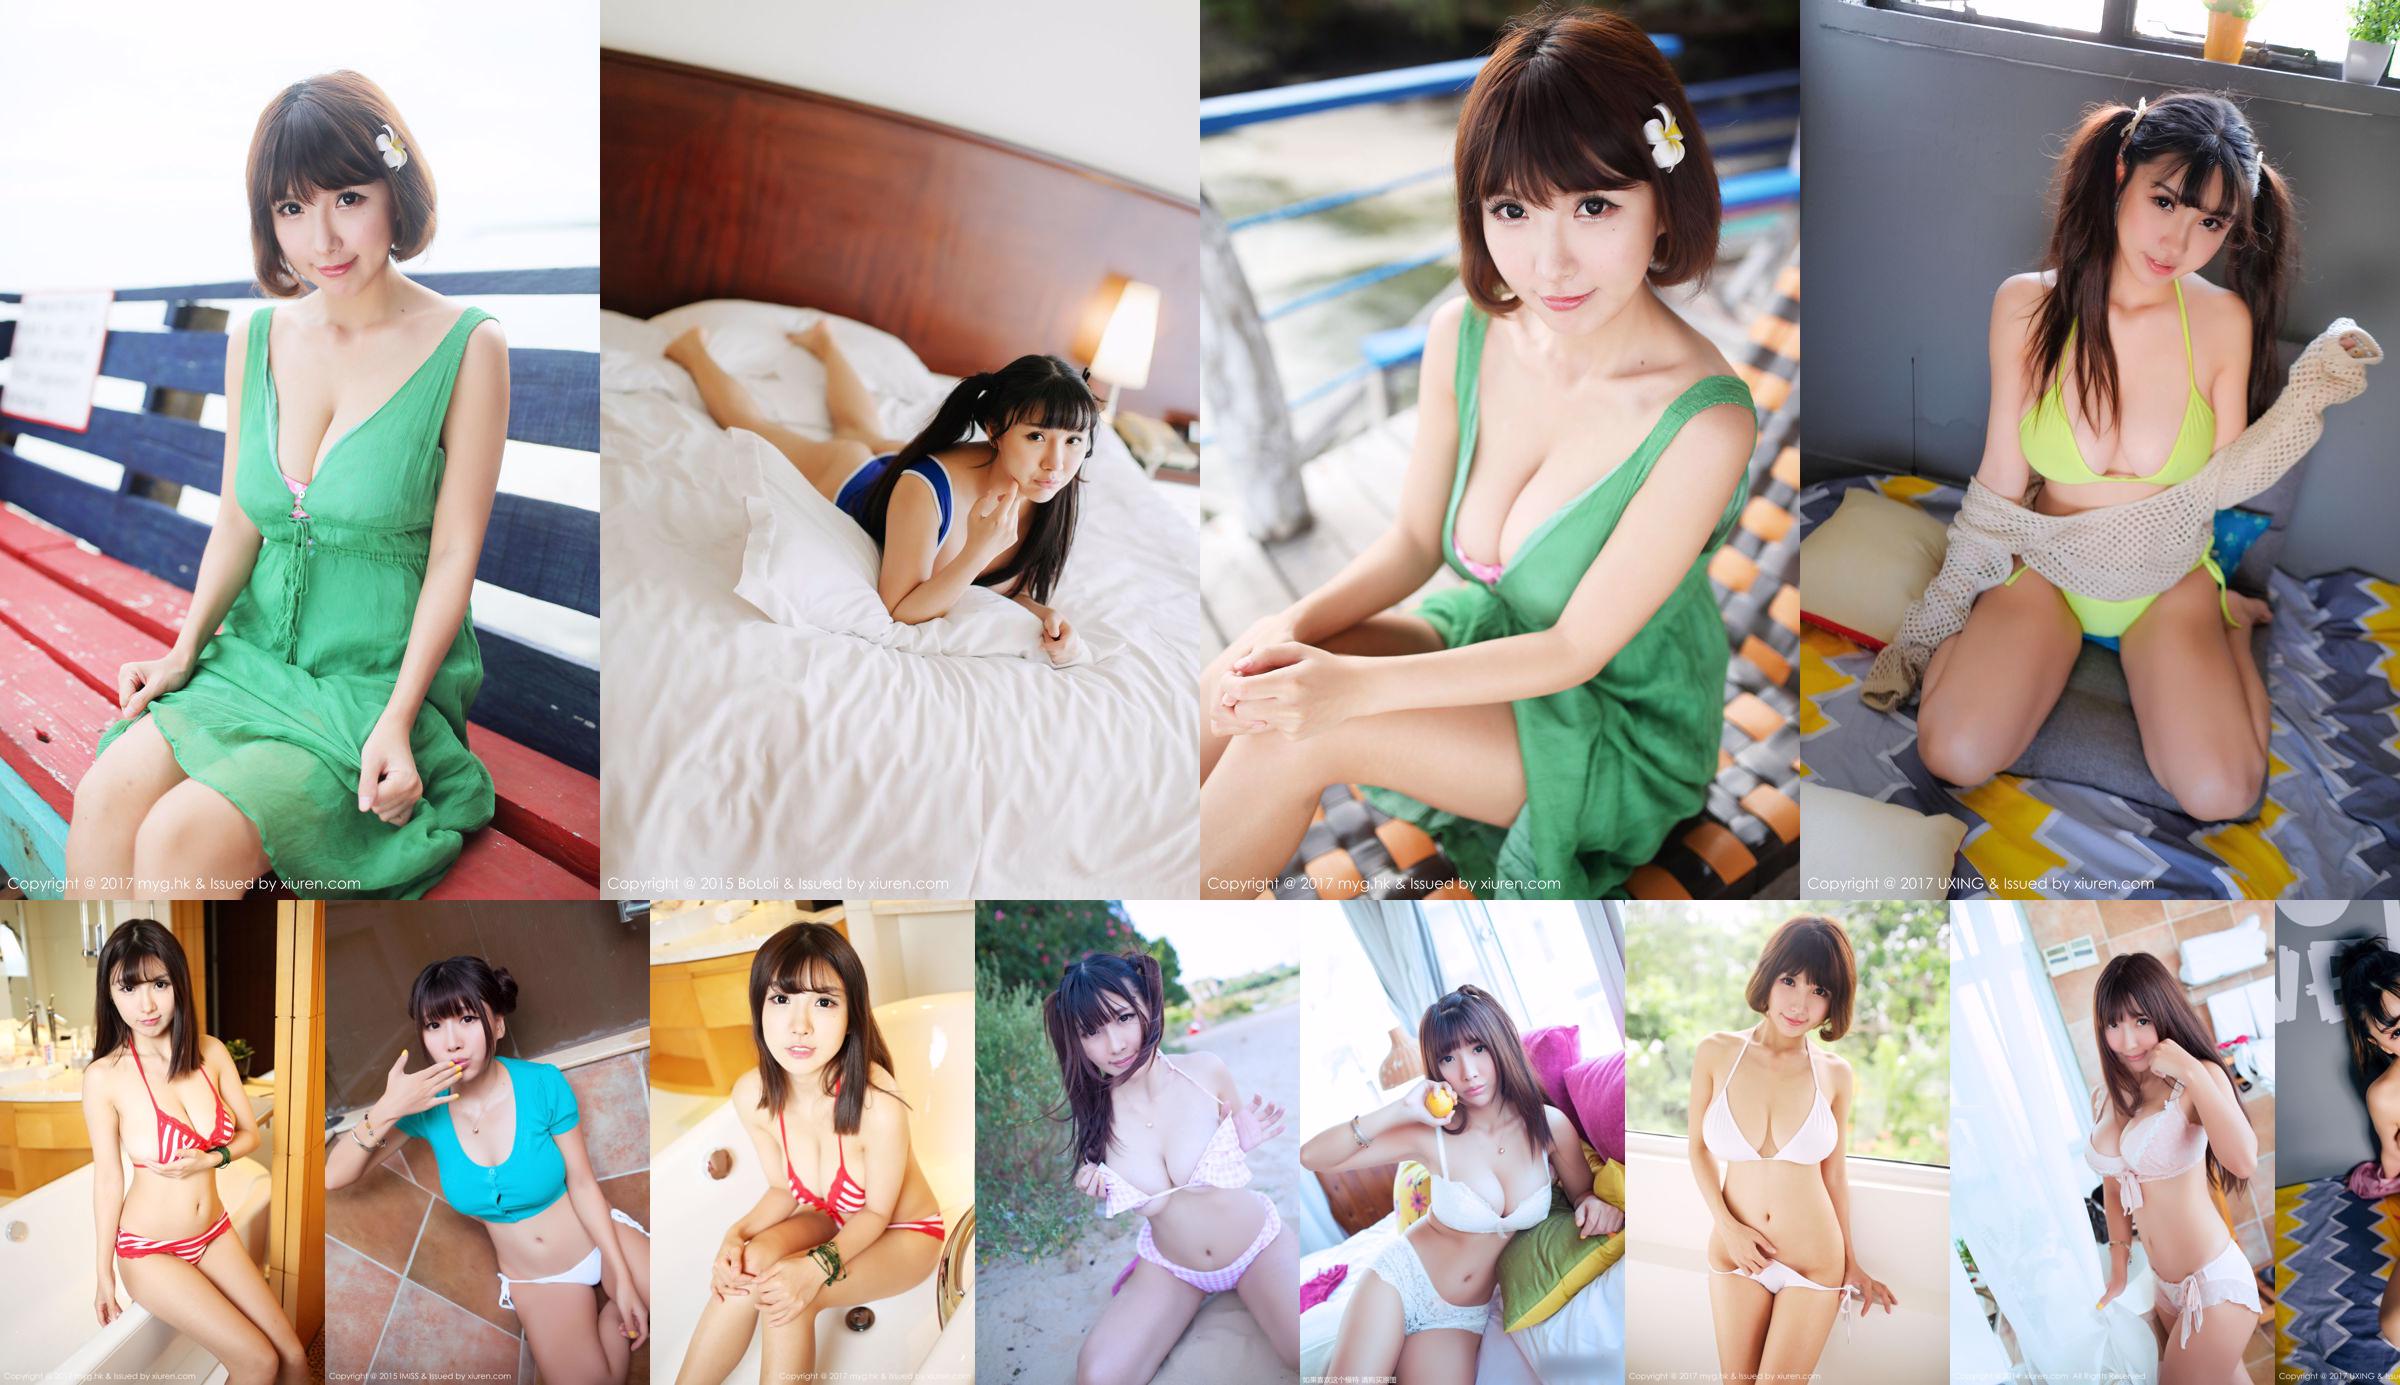 Lee Jin Hee / Xiao Qian Sunny "Gebroken borstondergoed + Seaside-serie" [XiuRen] No.227 No.ffb4ae Pagina 3